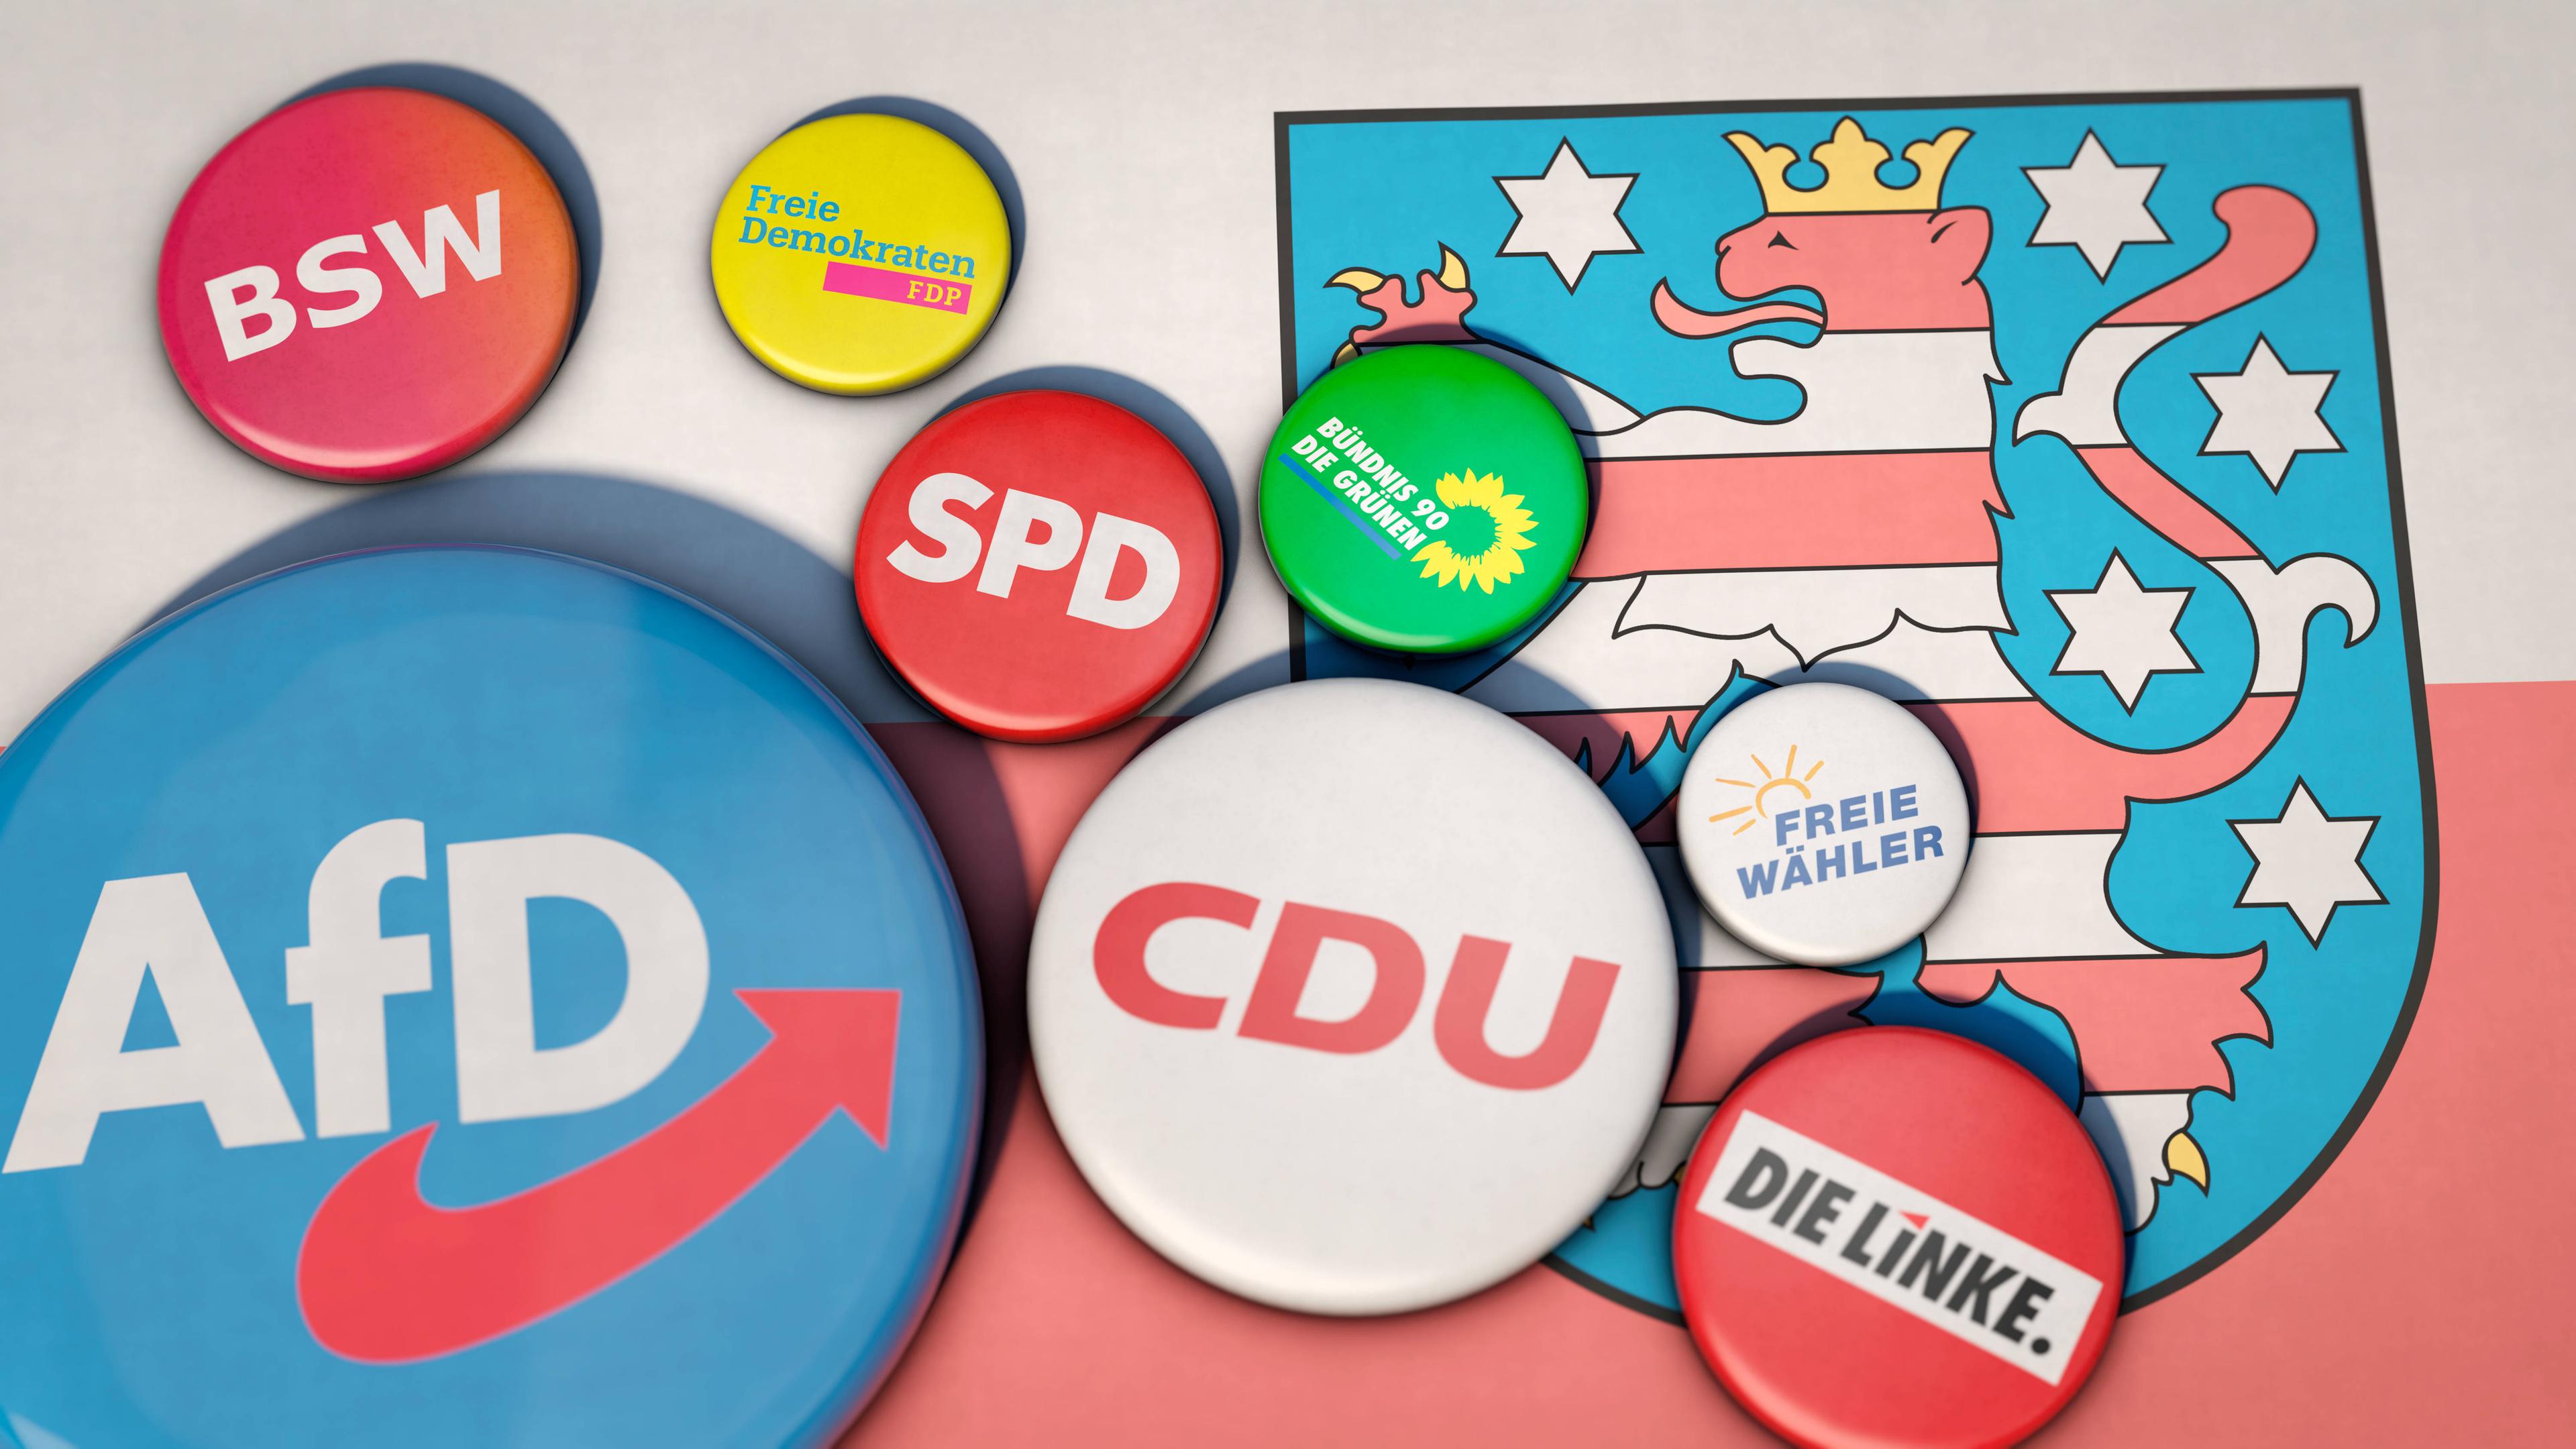 Parteilogos der wählbaren Parteien, darunter AfD, CDU, BSW